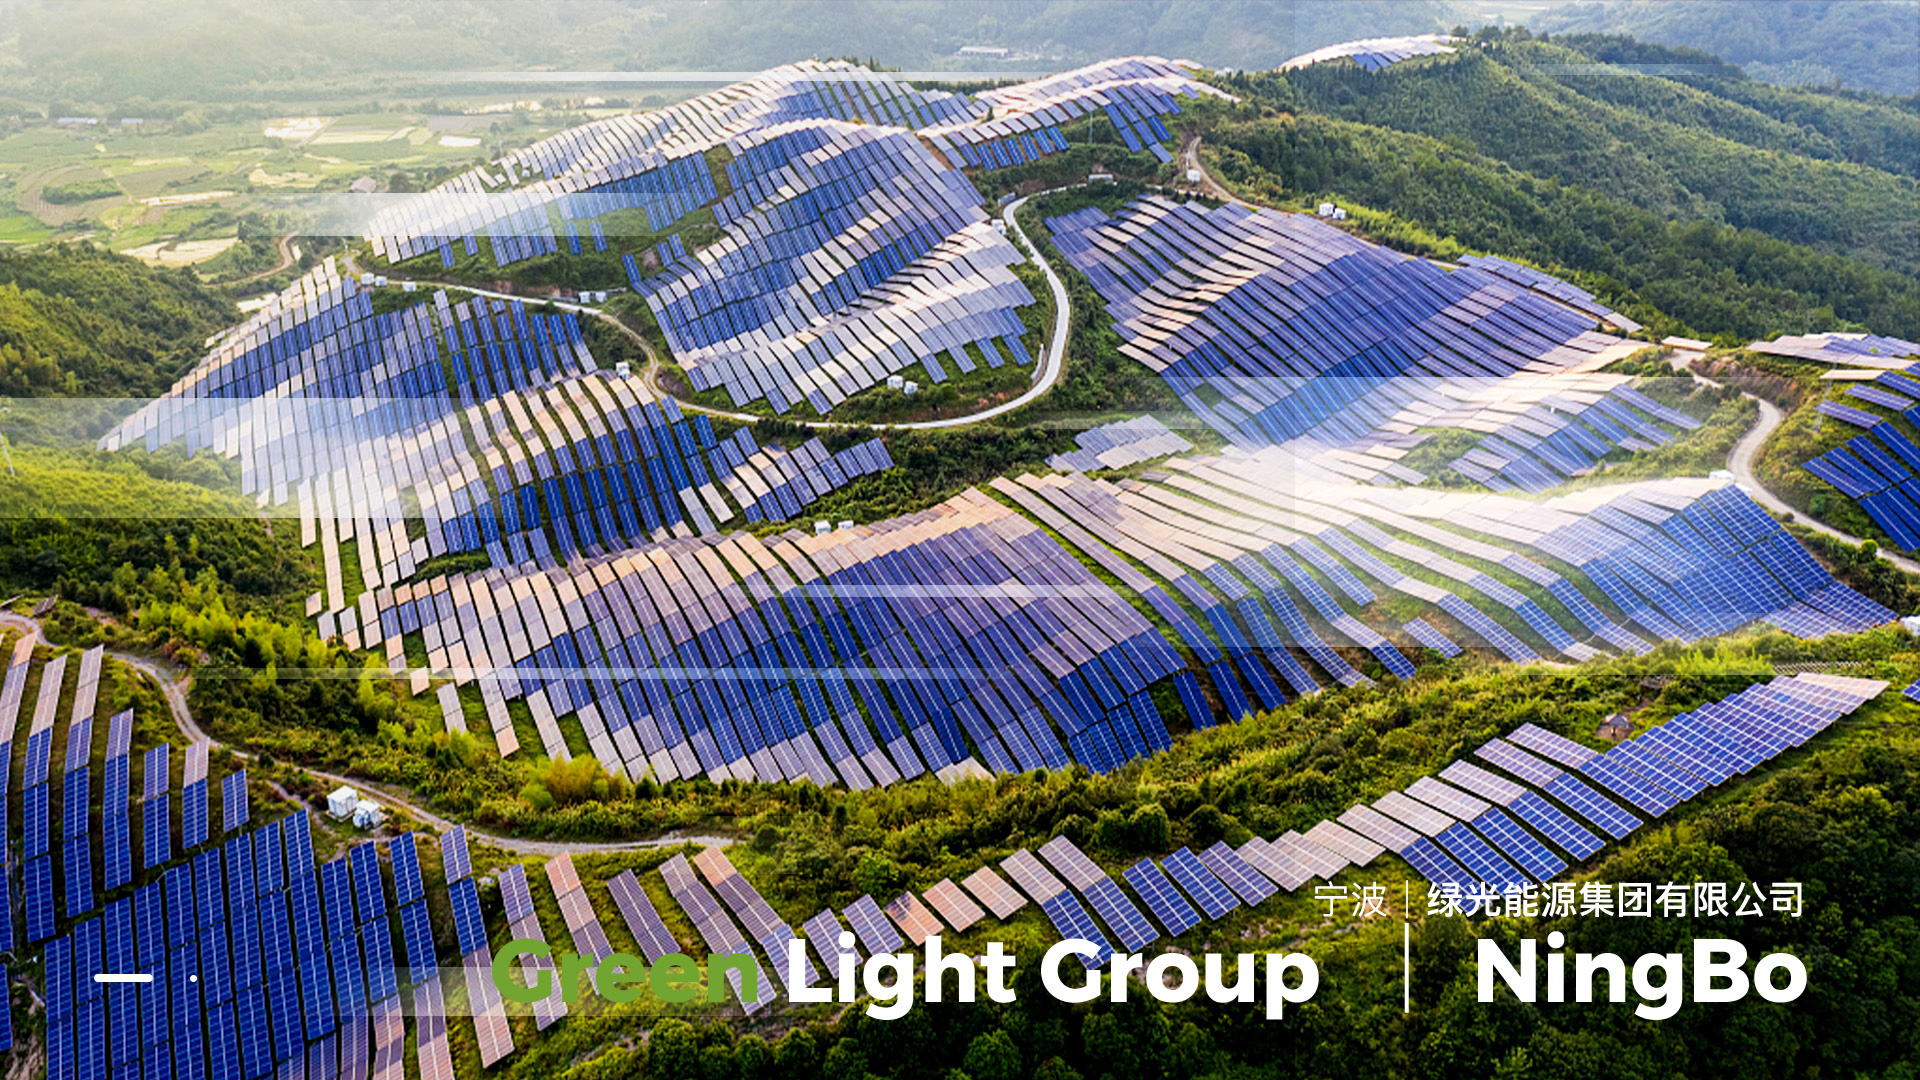 宁波绿光能源集团有限公司